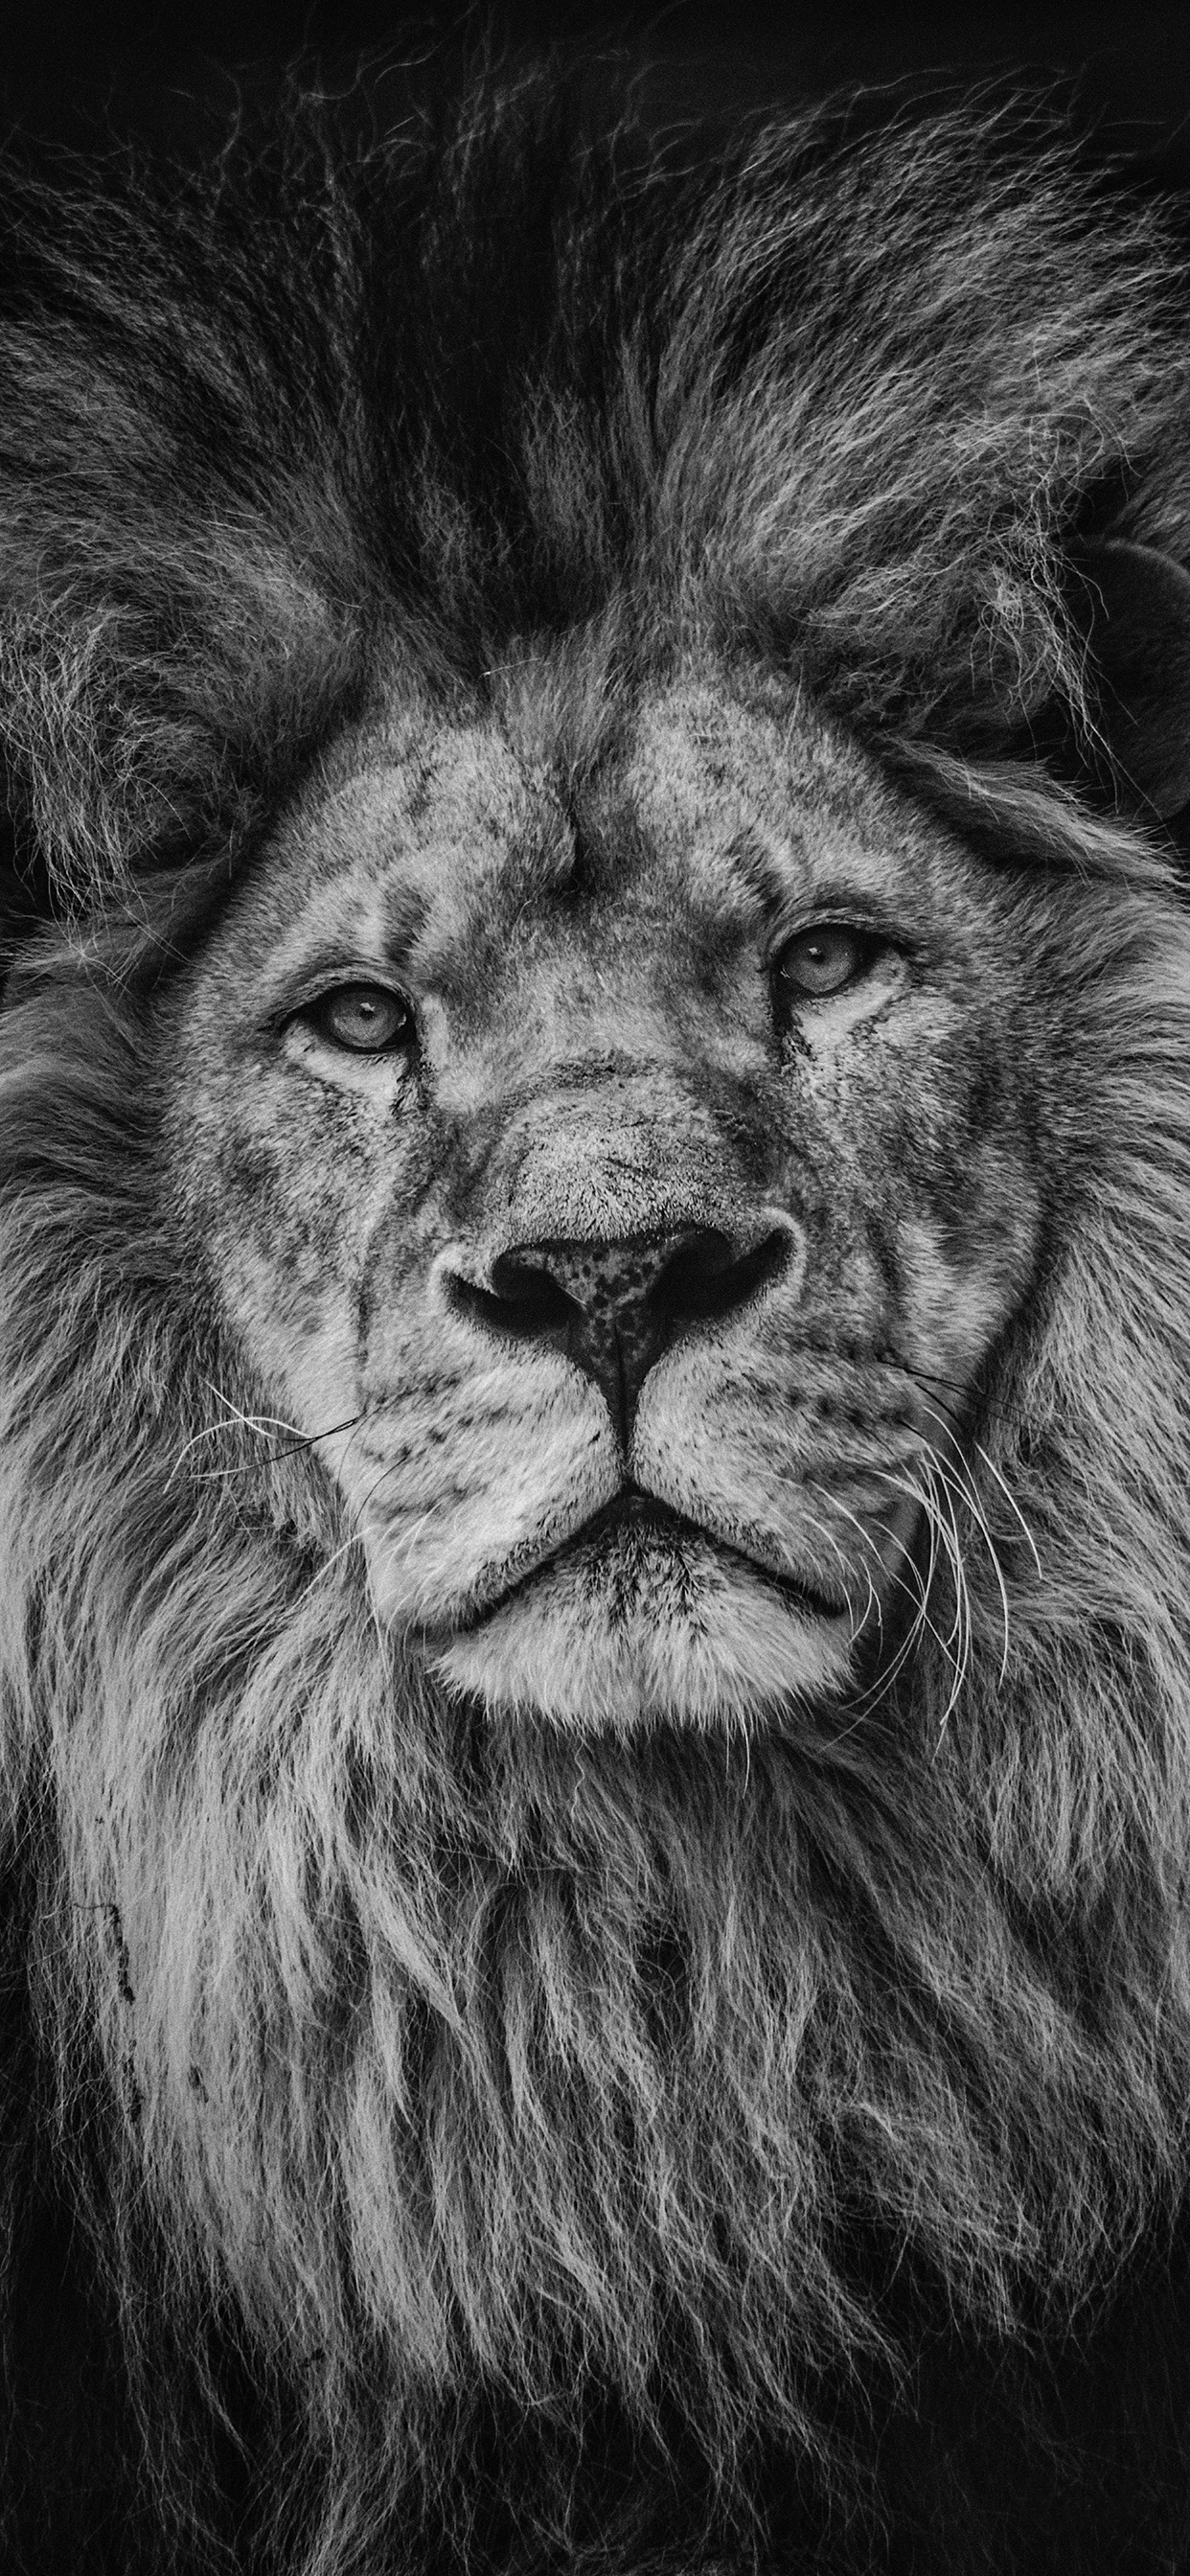 Một hình nền sư tử đẹp và ấn tượng sẽ làm mới hoàn toàn giao diện iPhone của bạn. Và điều tuyệt vời hơn nữa, bạn hoàn toàn có thể tải những bức hình nền sư tử cho iPhone miễn phí từ trang web của chúng tôi. Hãy trải nghiệm ngay!